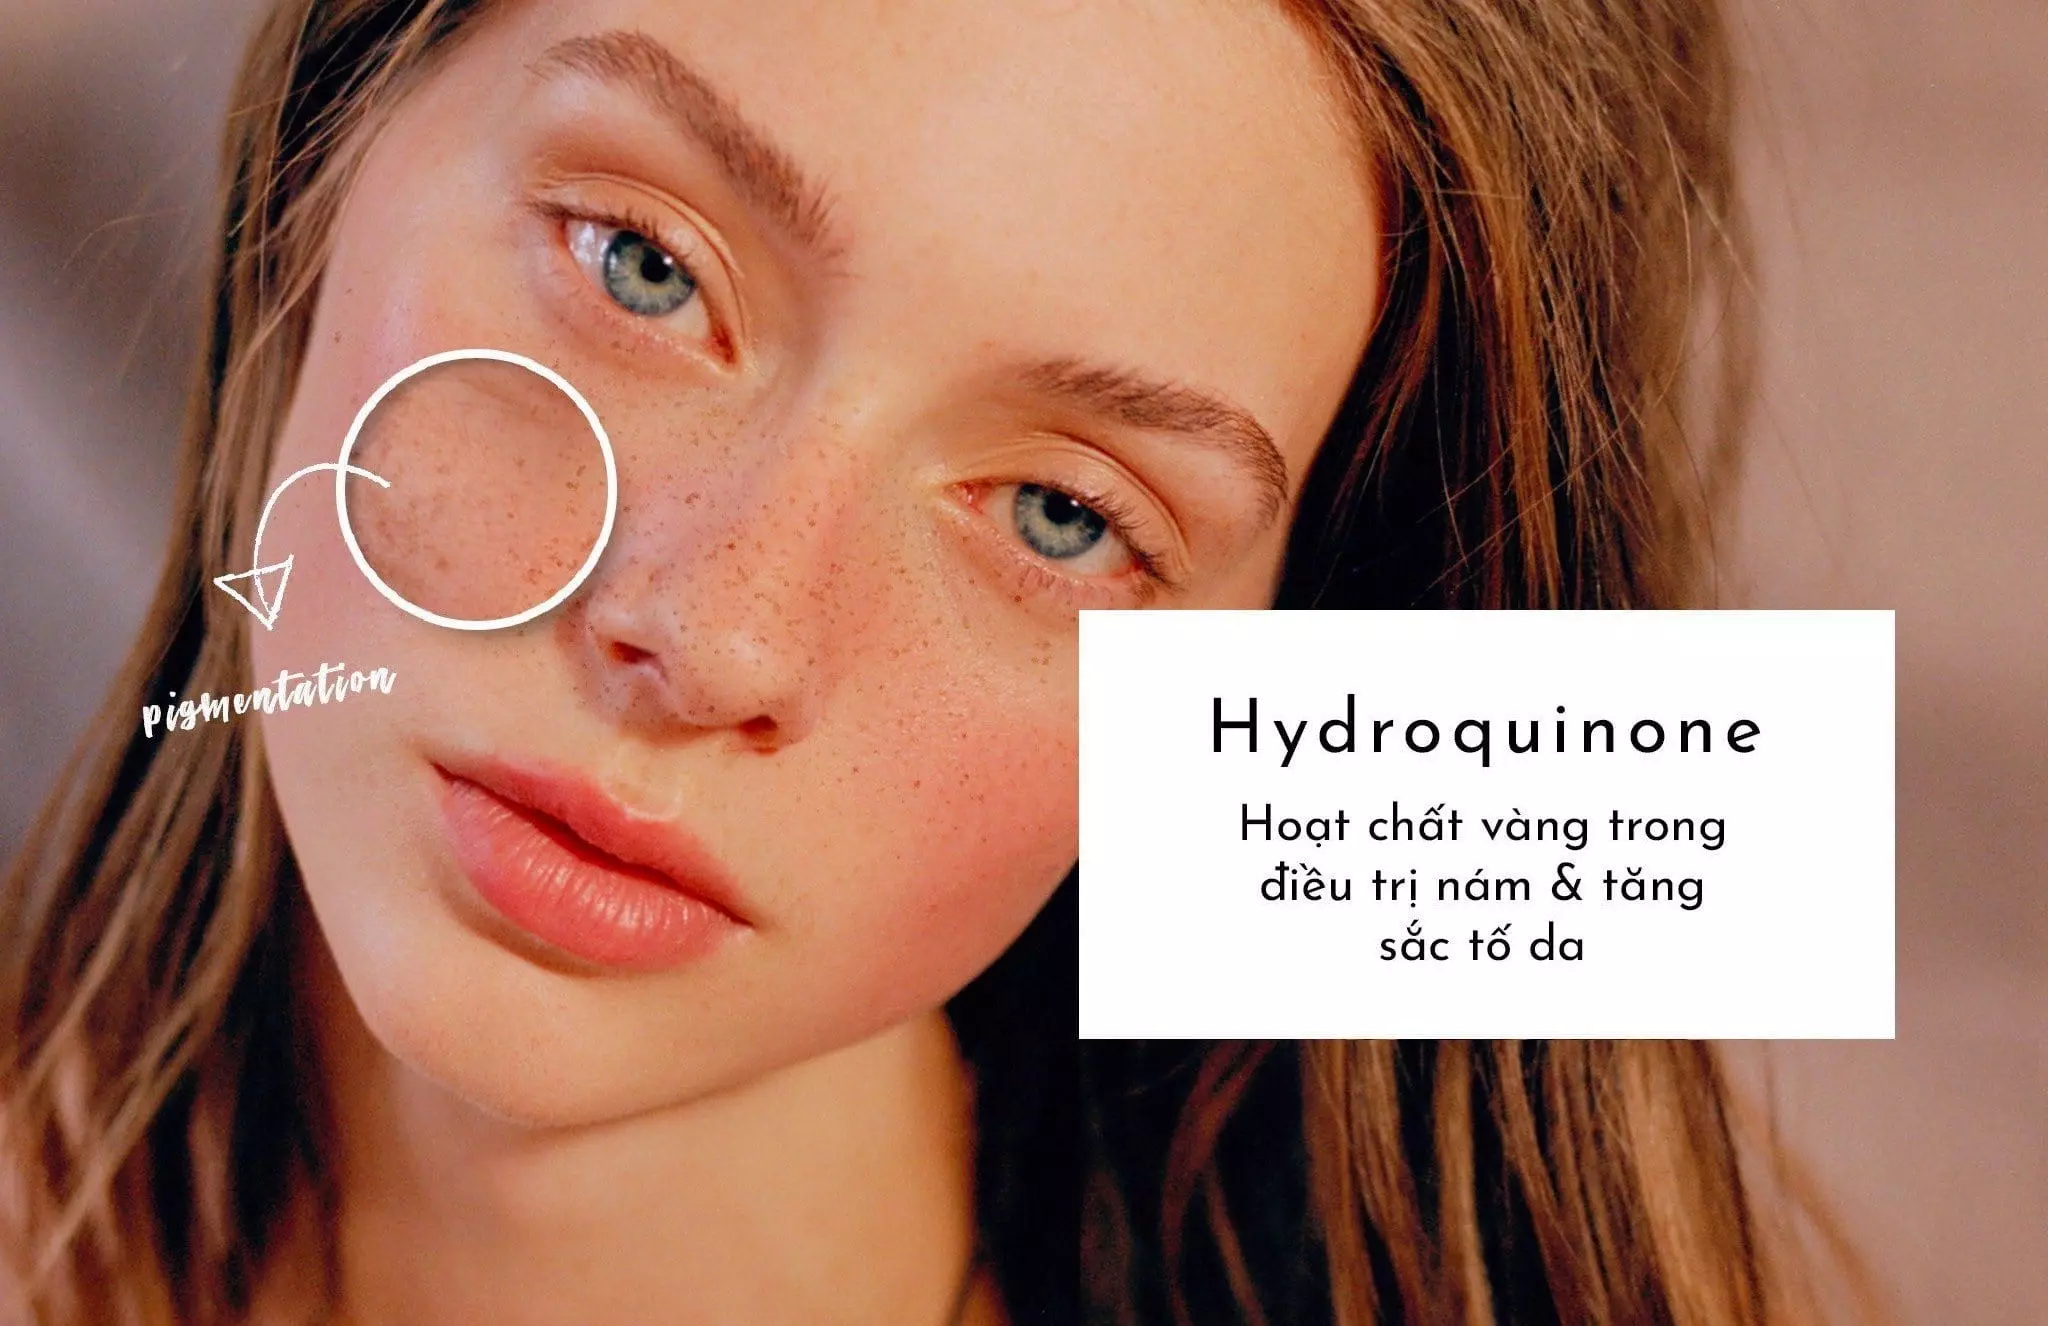 Chăm sóc da mặt trắng mịn với Hydroquinone